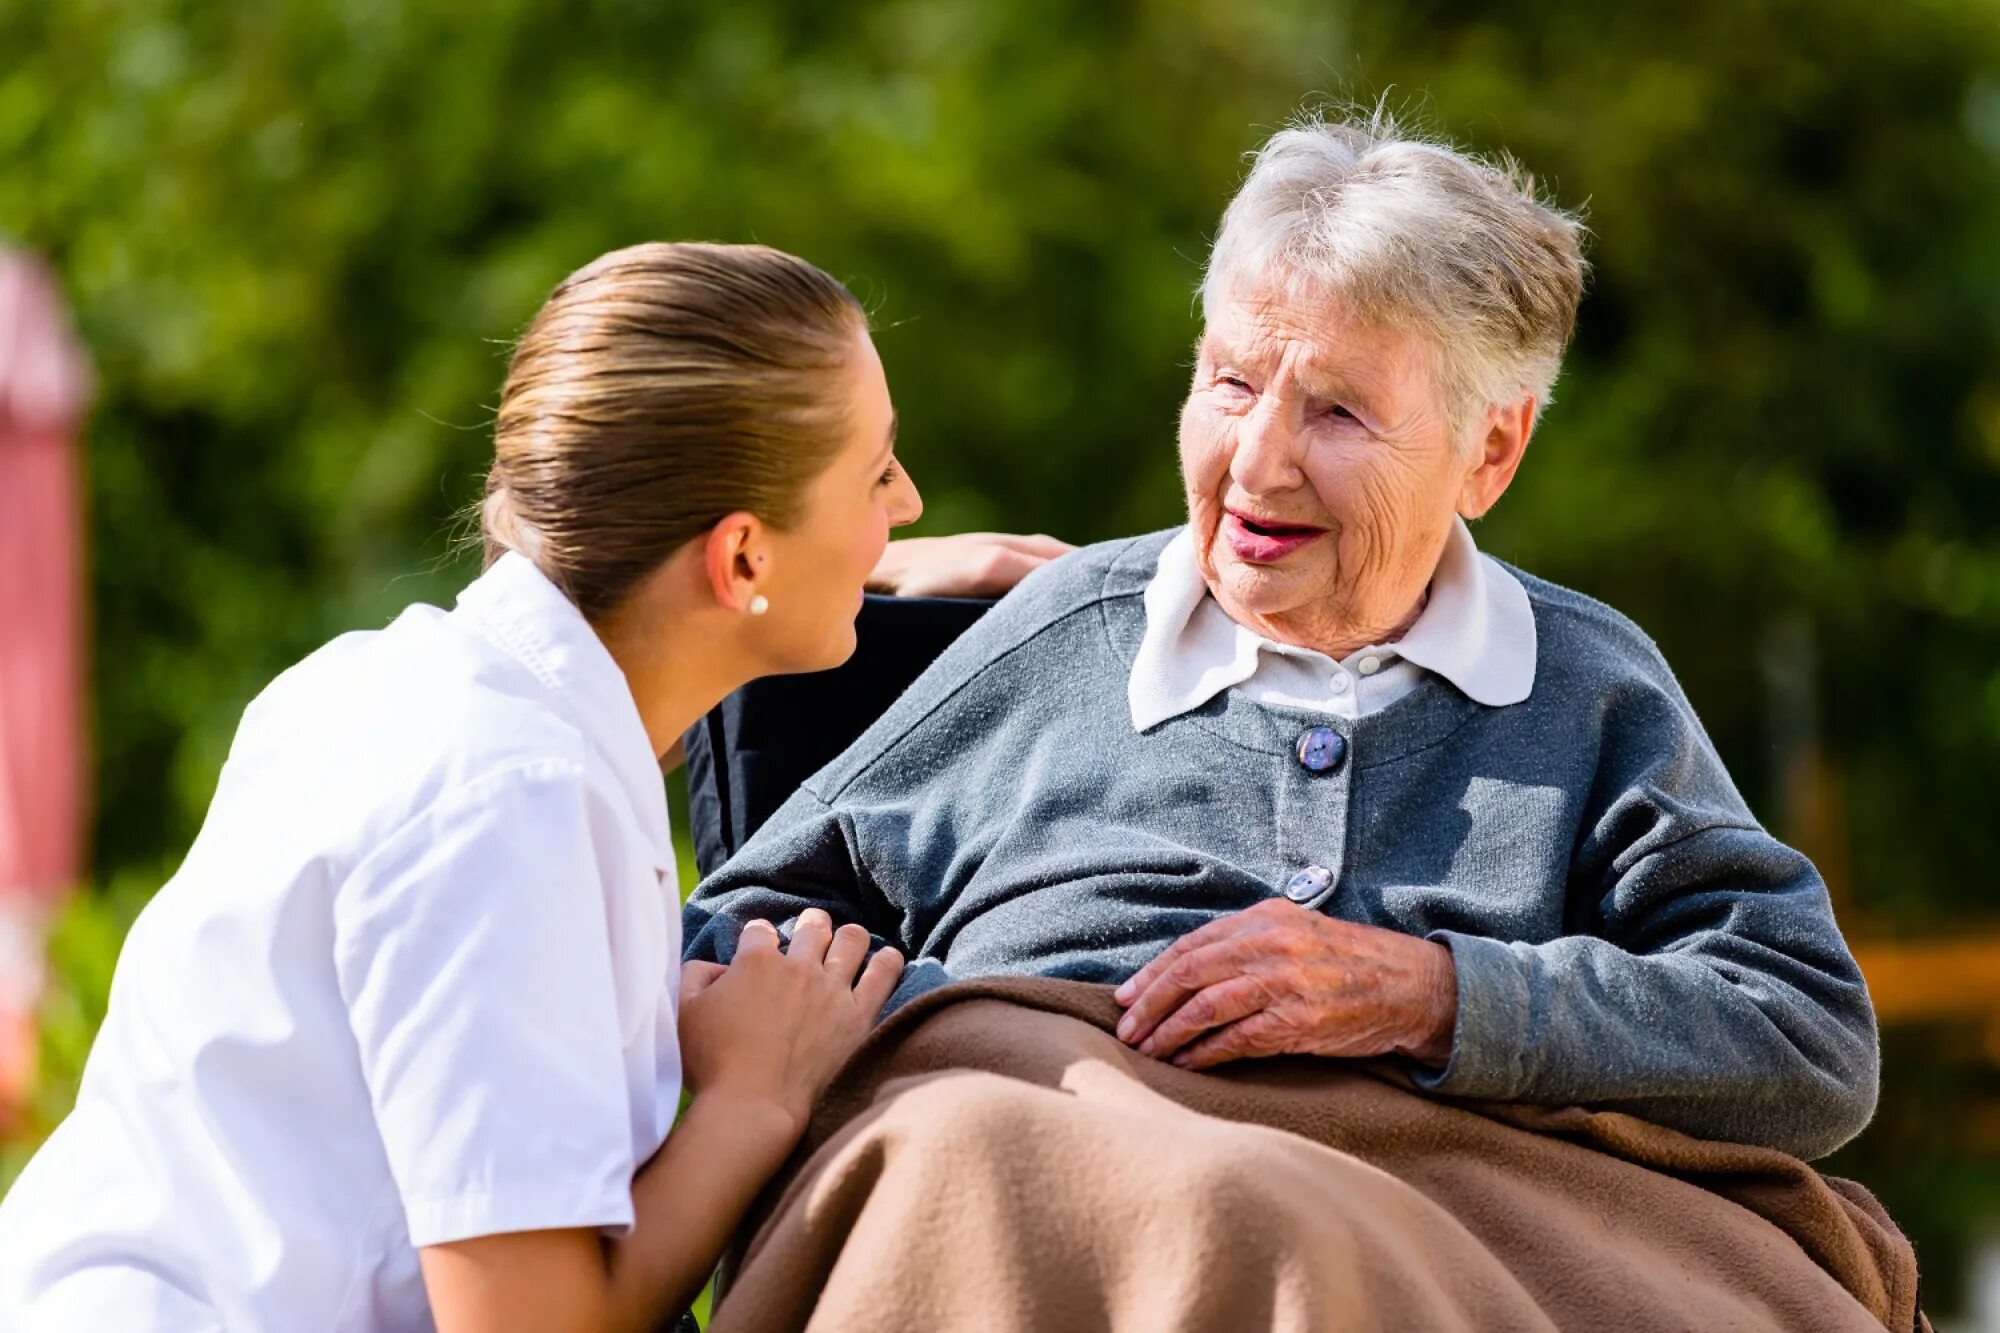 Fill in charity foster senior. Пожилые люди. Забота о пожилых людях. Общение с пожилыми людьми. Разговор с пожилым человеком.